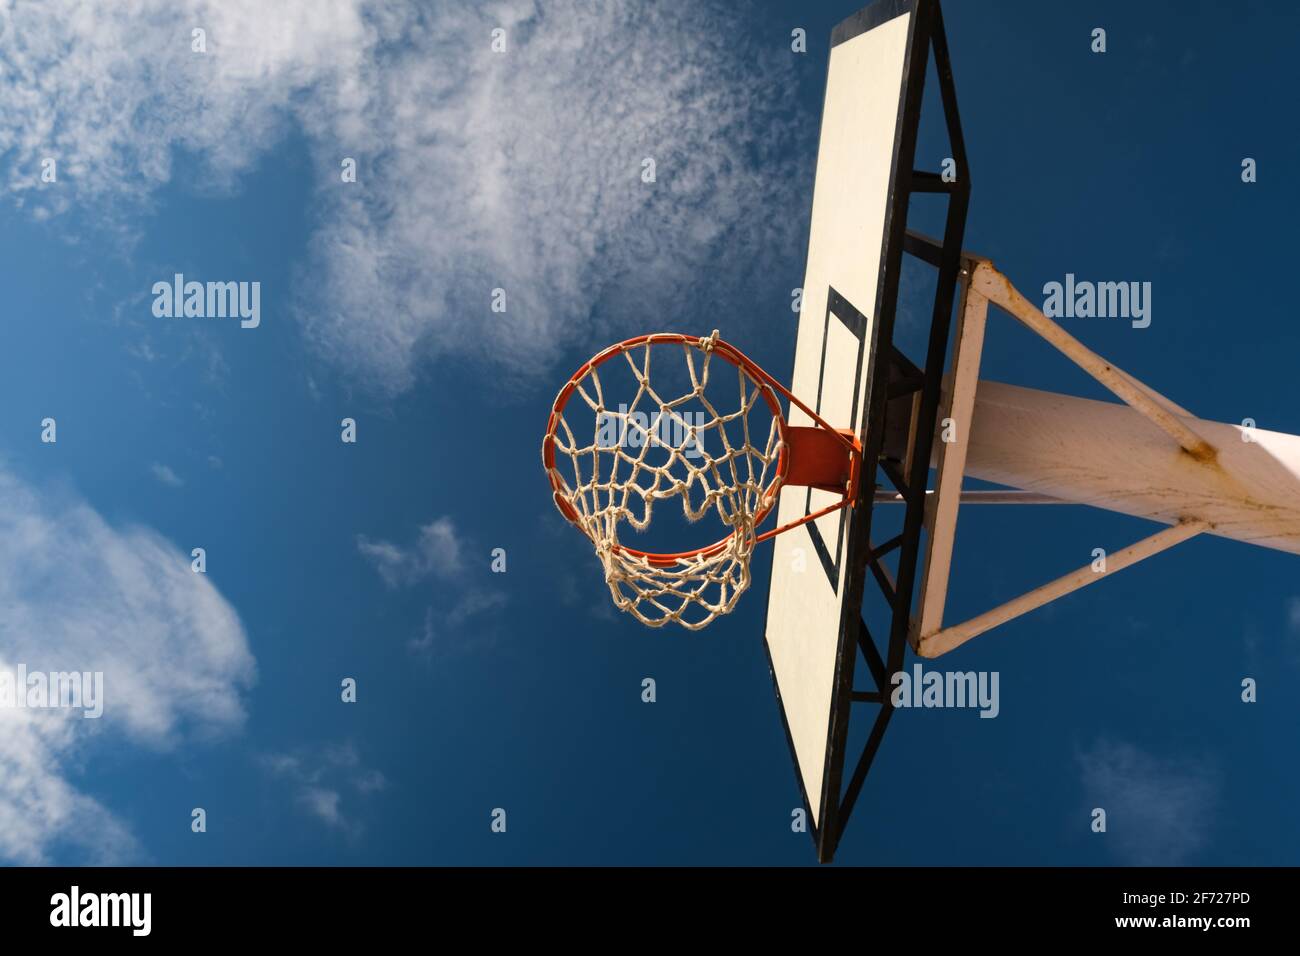 Leerer Basketballkorb aus niedrigerem Blickwinkel, heller, schöner Tag, offener Himmel. Ziele hoch/erreiche dein Zielkonzept. Stockfoto